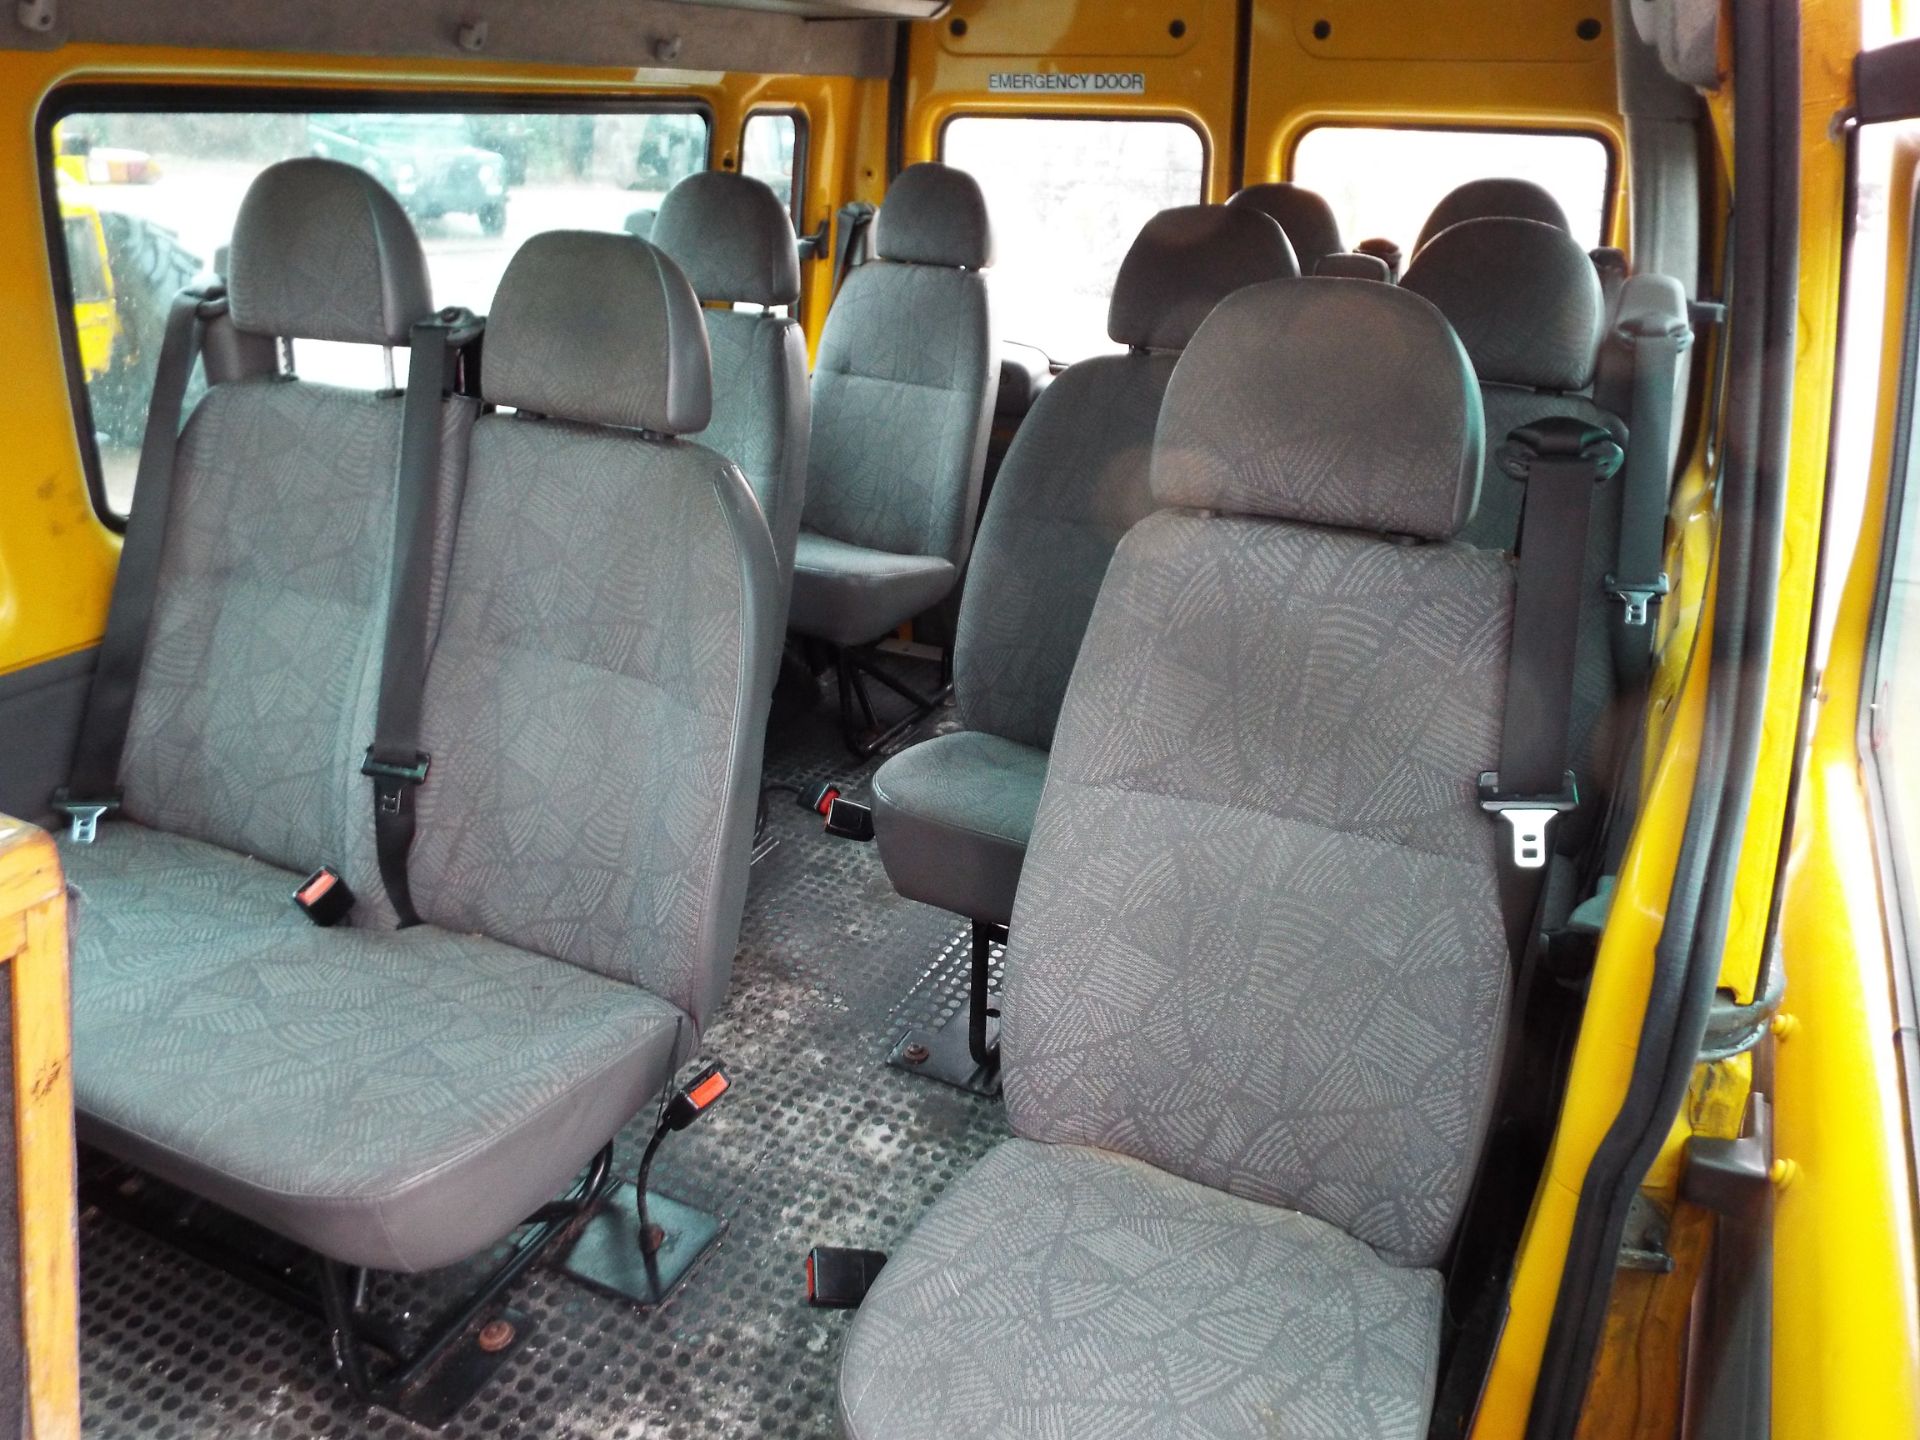 Ford Transit 11 Seat Minibus - Image 13 of 21